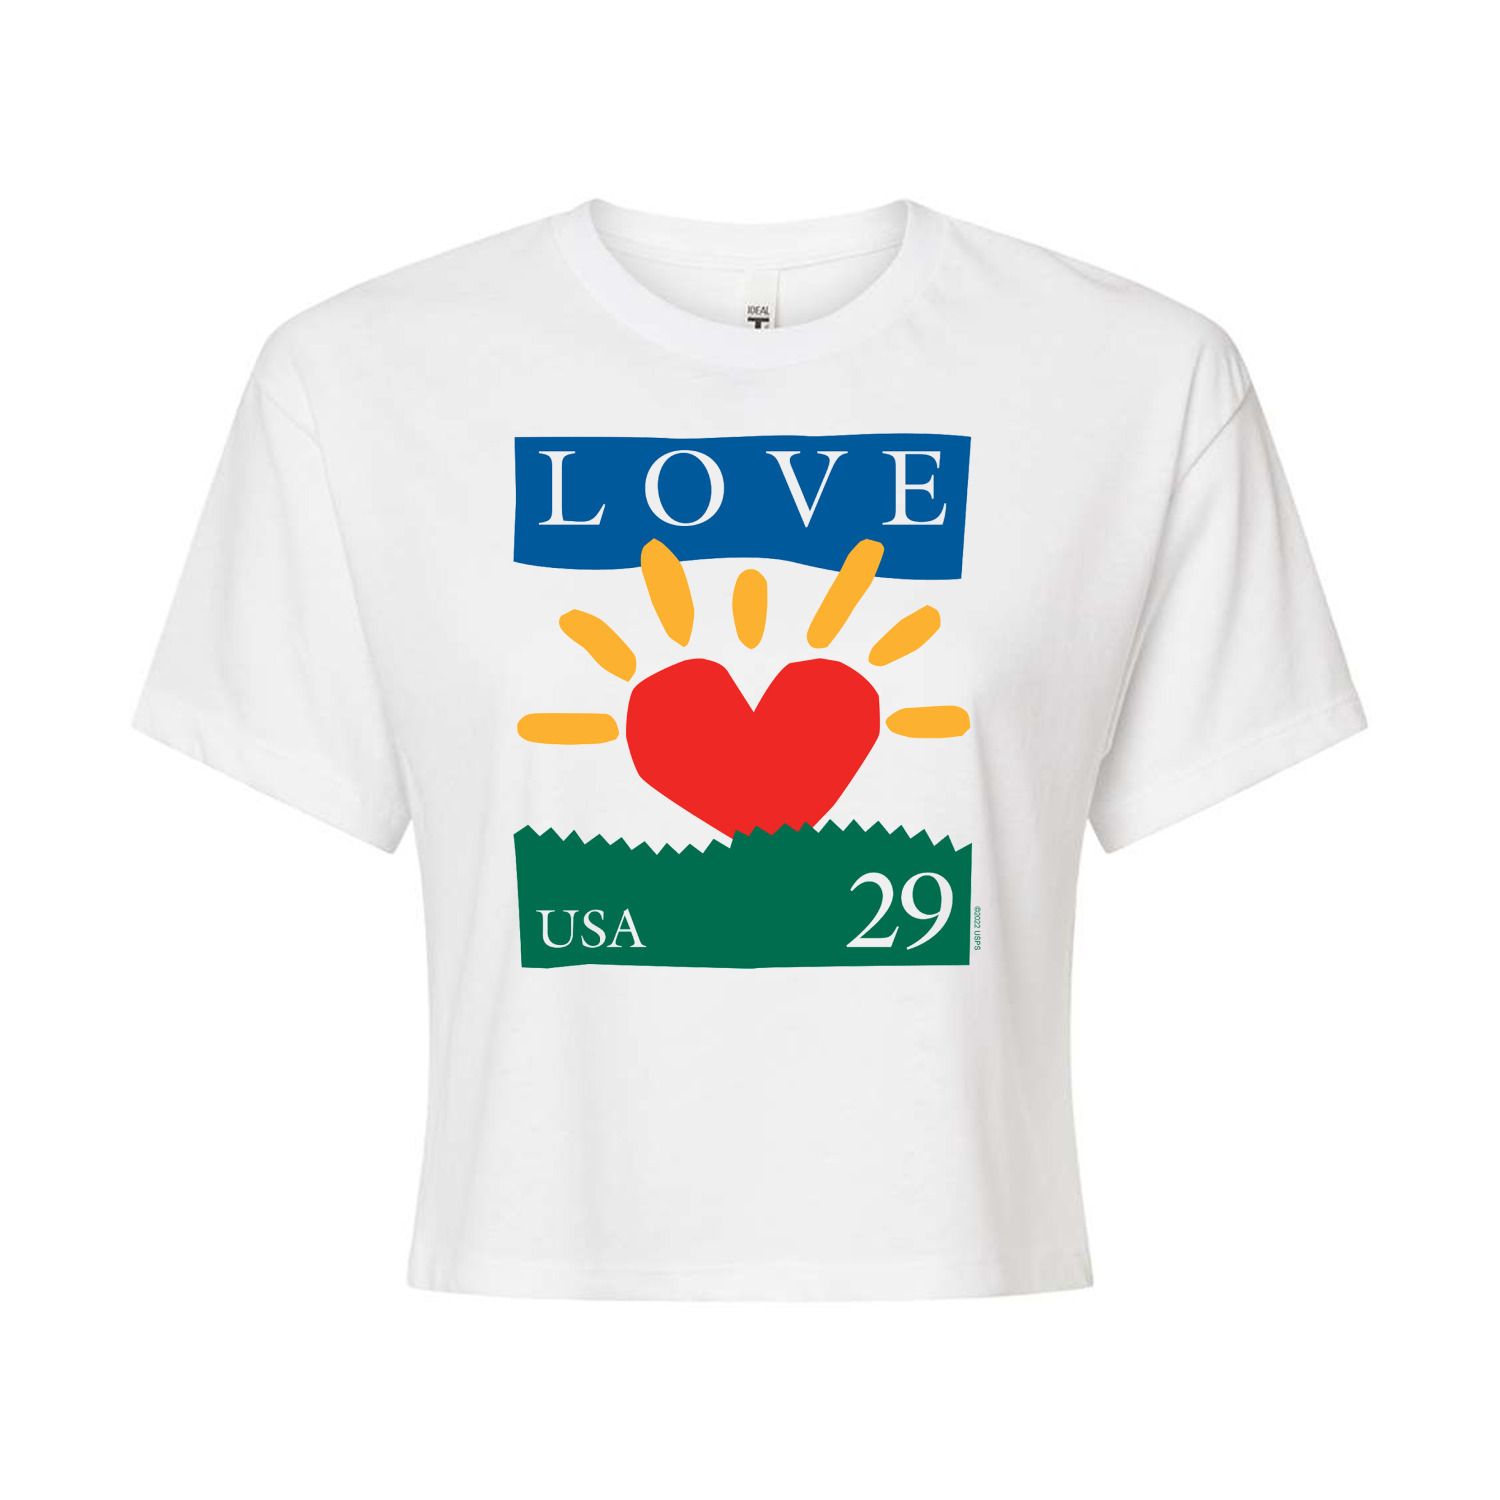 Укороченная футболка USPS Heart Love 29 для юниоров Licensed Character, белый укороченная худи usps love heart stamp для юниоров licensed character